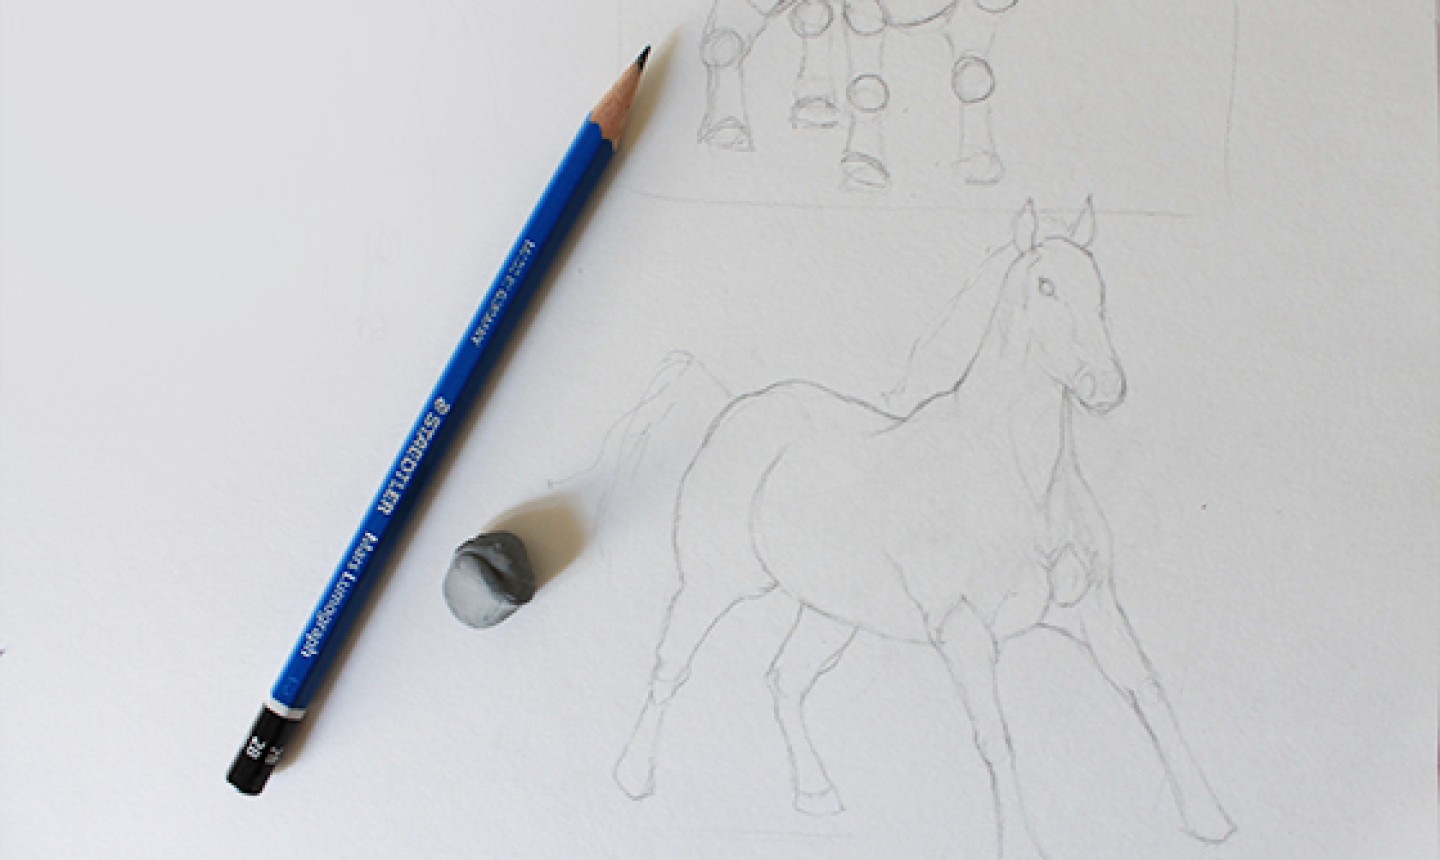 Dibujar en la granja: Cómo dibujar caballos y cabras | Craftsy en Español